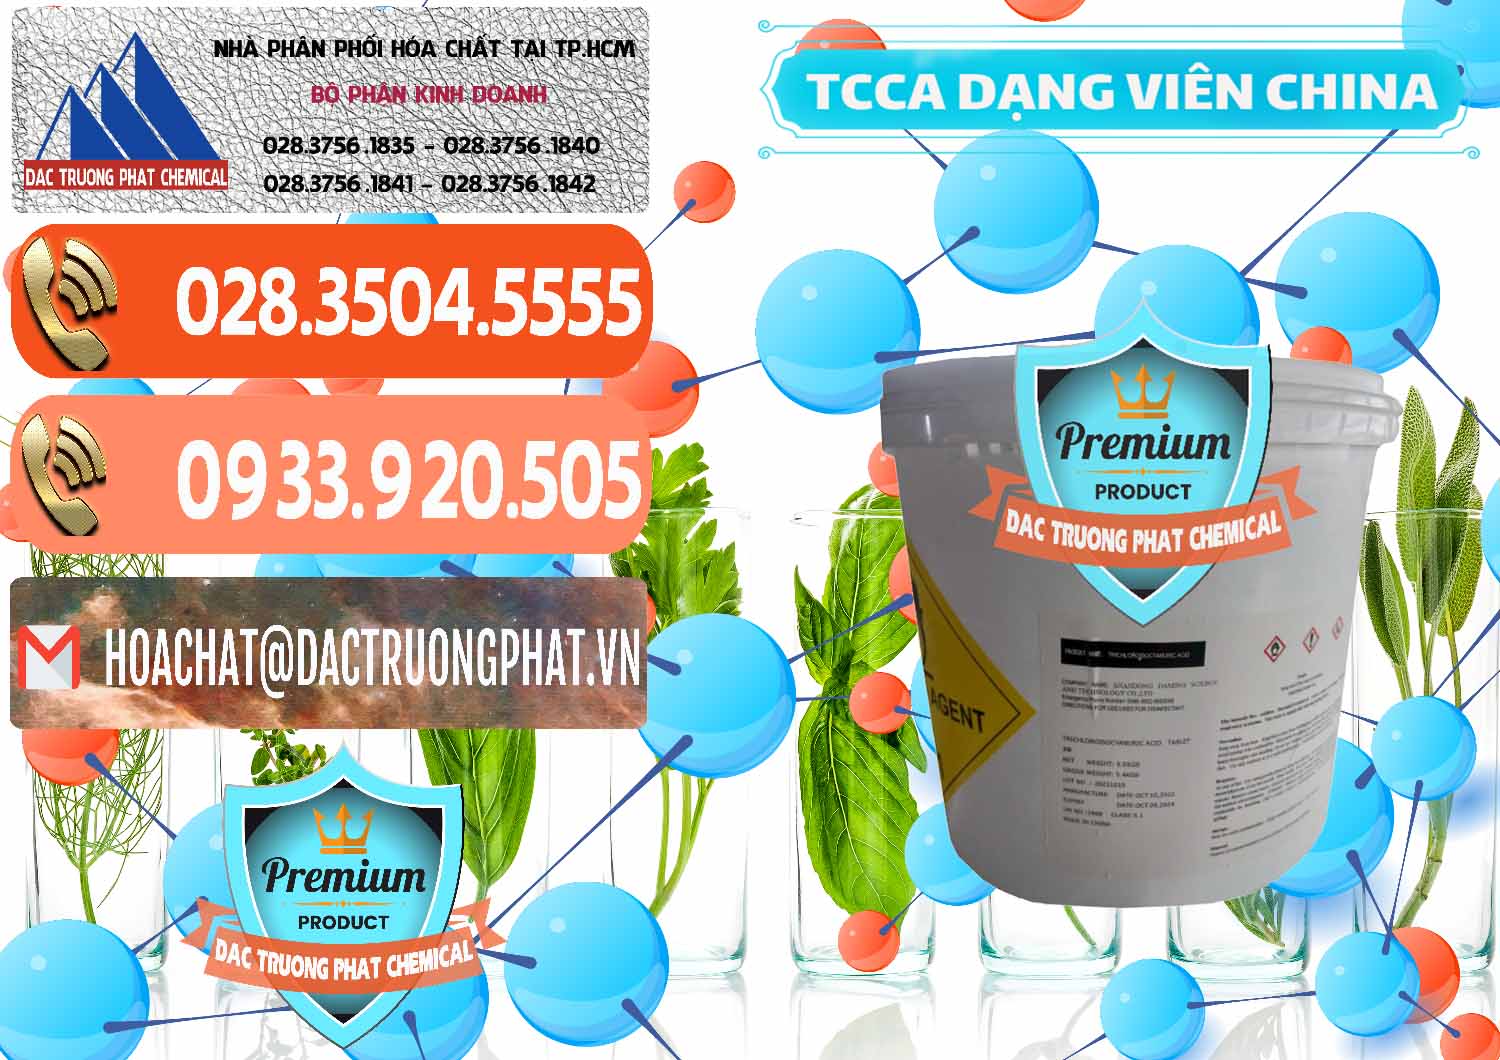 Cty phân phối và bán TCCA - Acid Trichloroisocyanuric Dạng Viên Thùng 5kg Trung Quốc China - 0379 - Công ty chuyên bán - cung cấp hóa chất tại TP.HCM - hoachatmientay.com